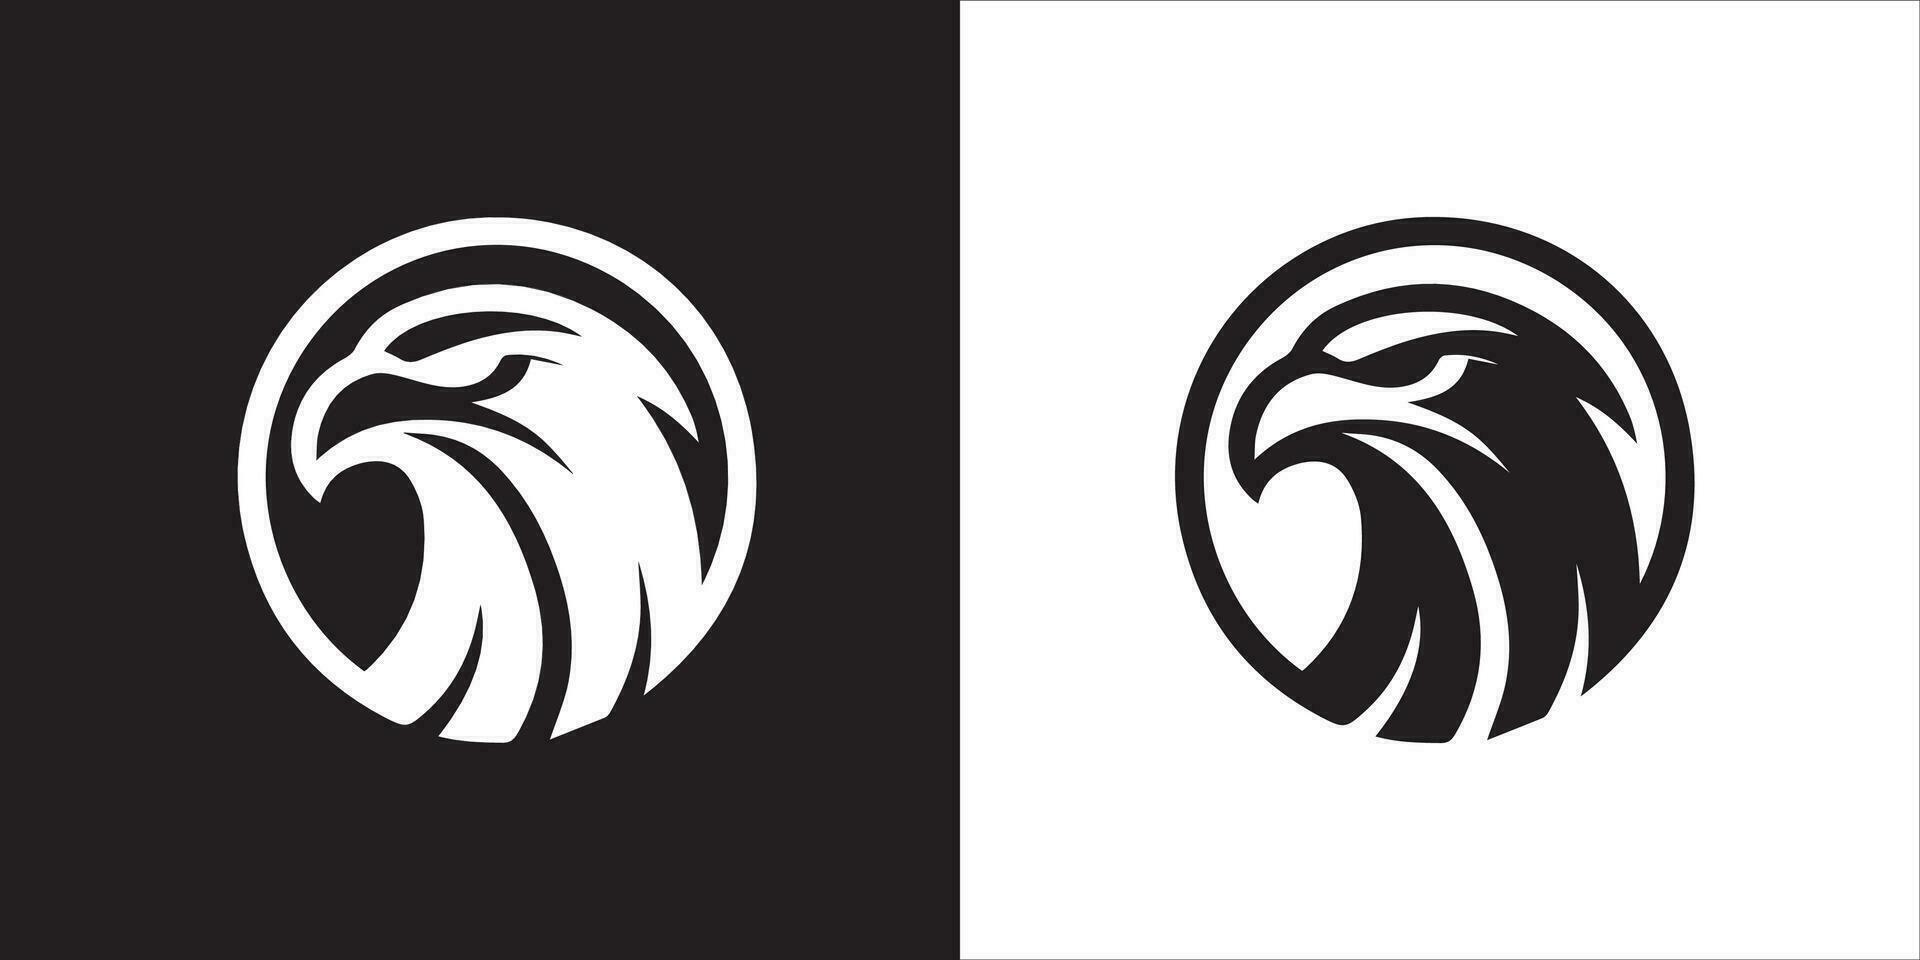 aquila, falco o falco portafortuna logo disegno, uccello testa distintivo emblema vettore icona